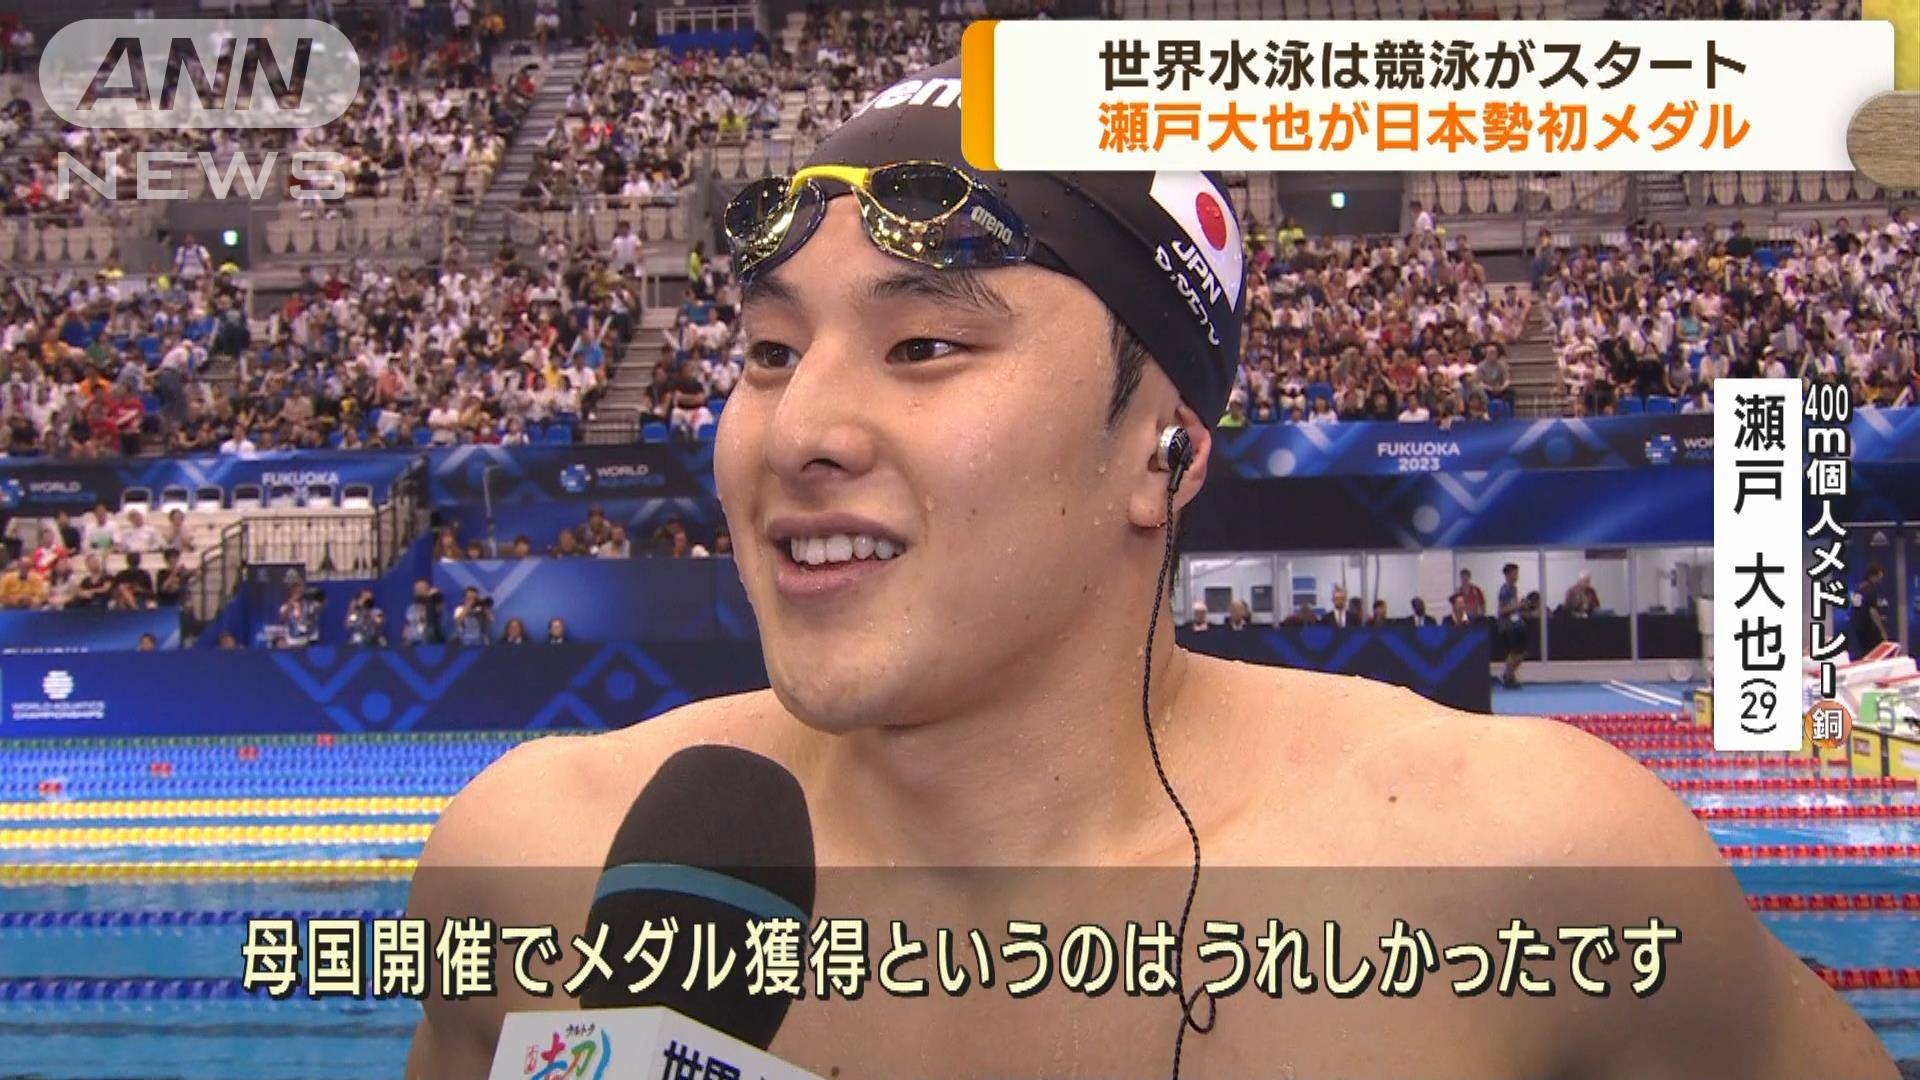 世界水泳 競泳がスタート 瀬戸大也が日本勢初メダル